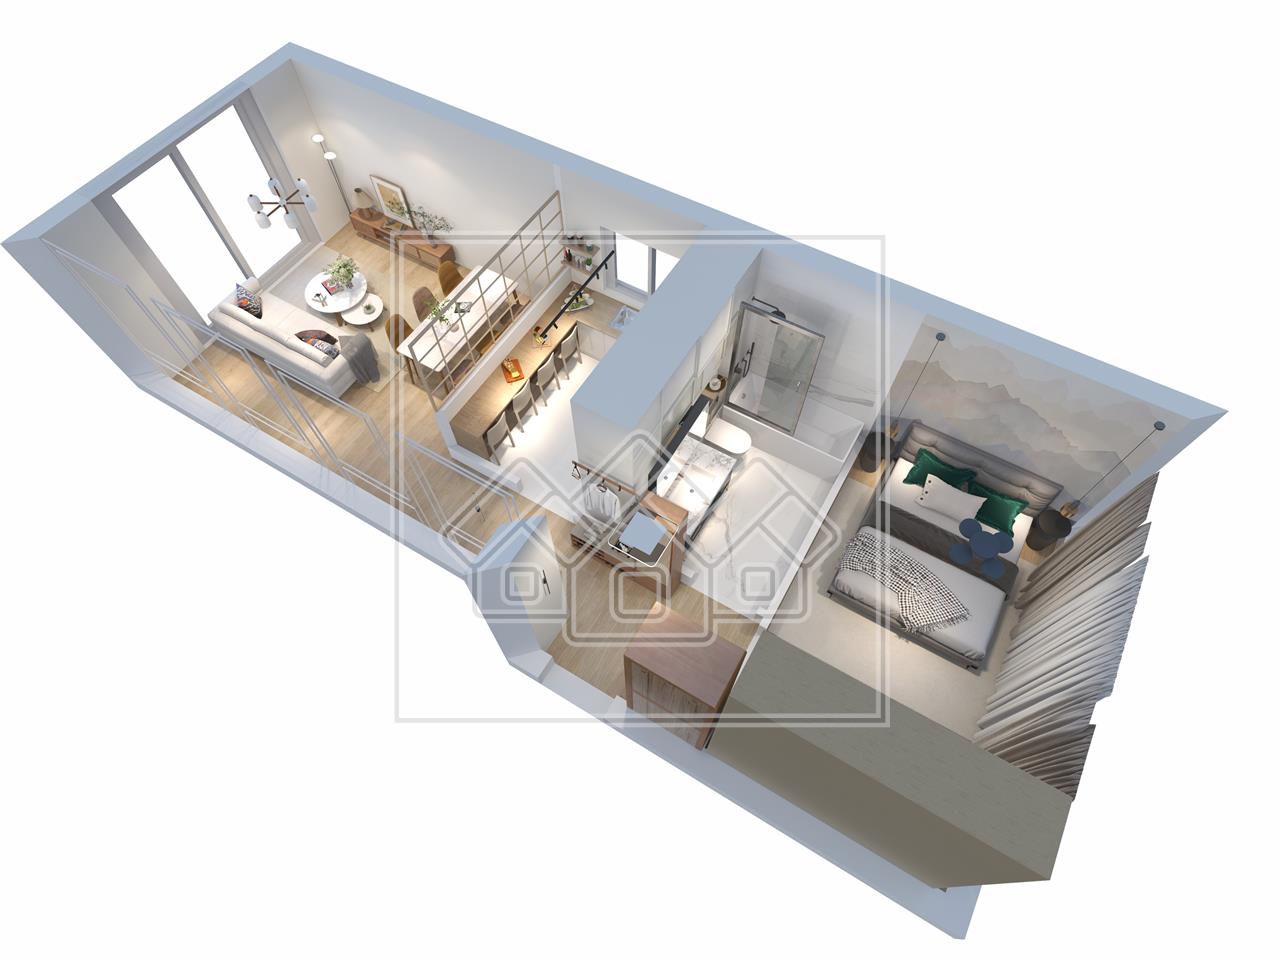 Apartament 2 camere, mobilat si utilat, intabulat (NCL-57F-Mi)